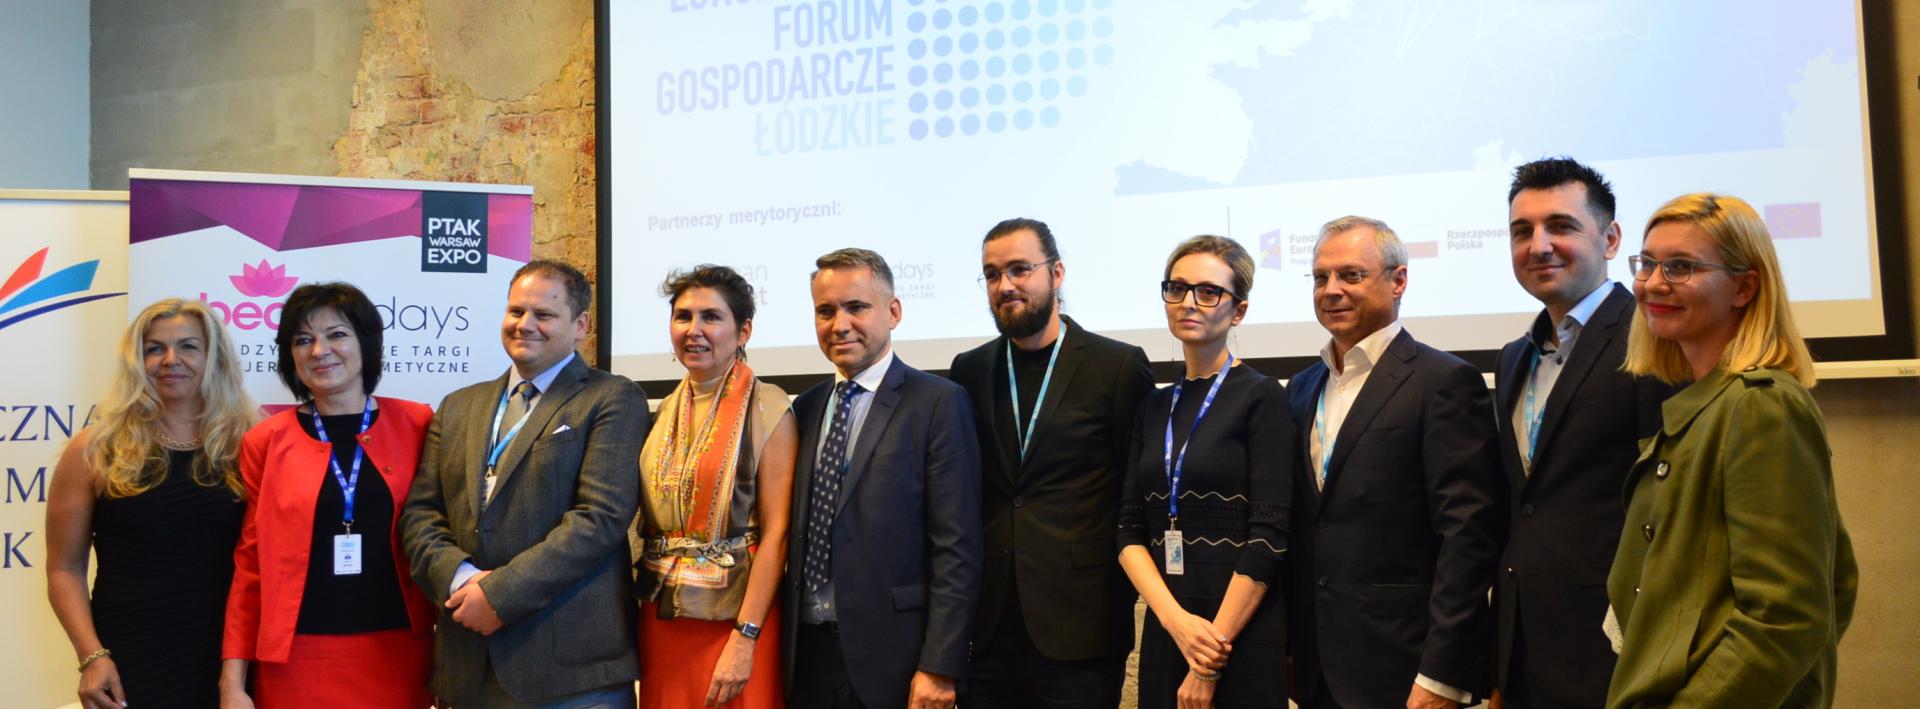 Kosmetyki w centrum uwagi – branżowa dyskusja podczas Europejskiego Forum Gospodarczego cz. II